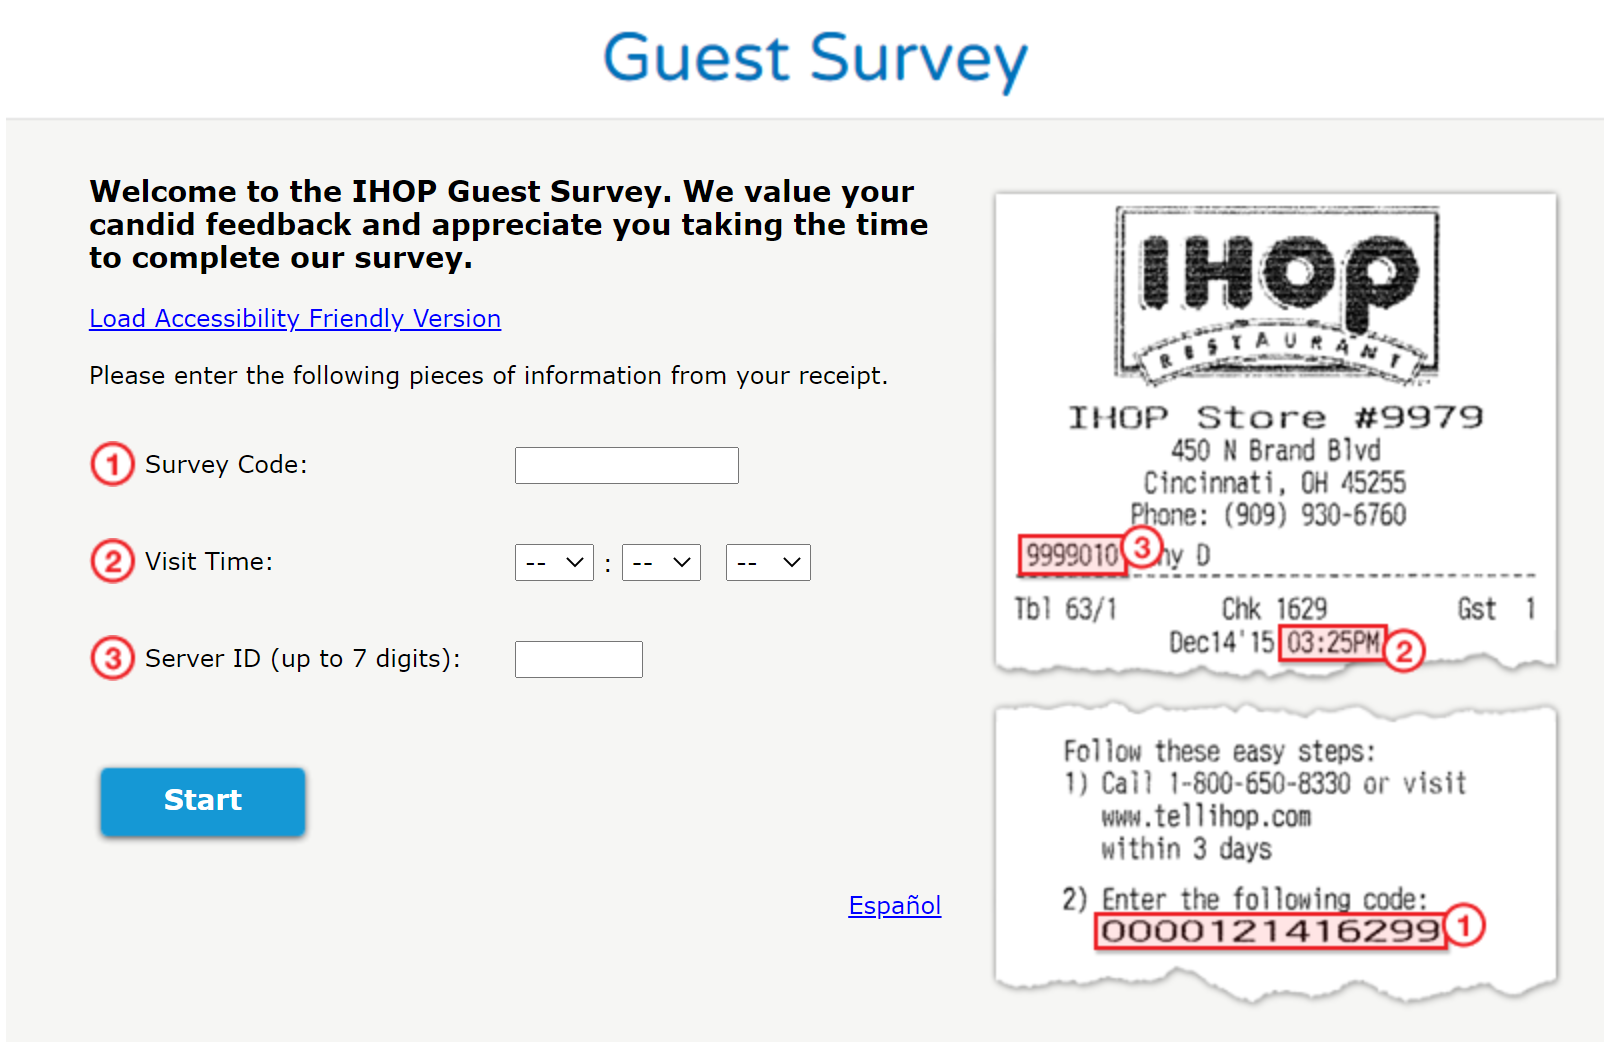 talktoihop voice of the guest survey